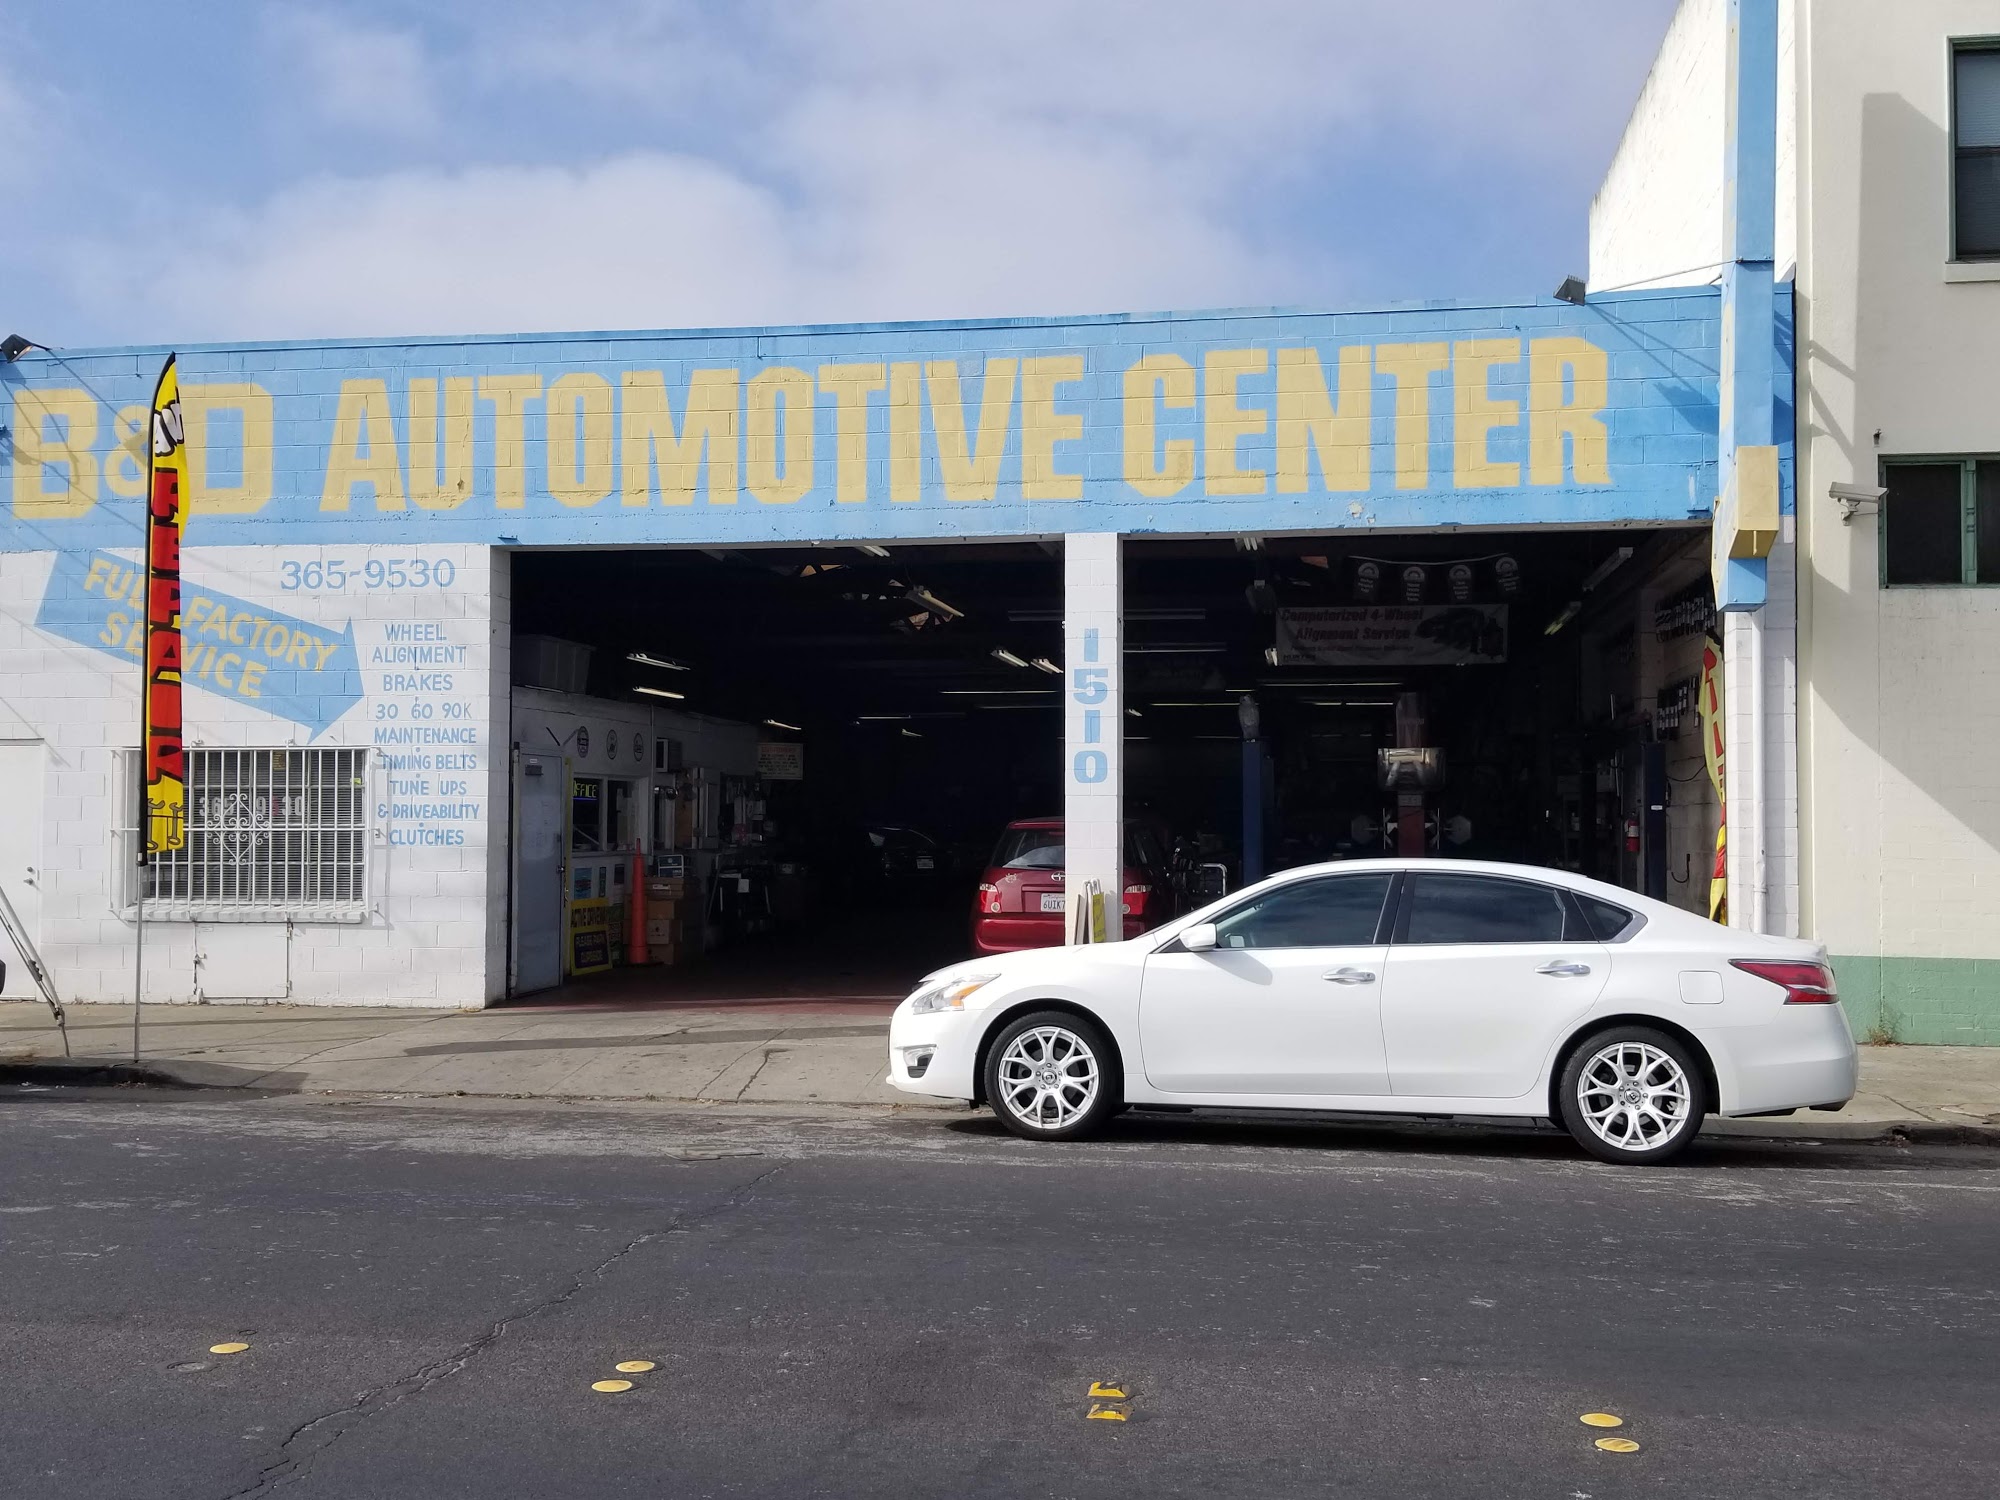 B & D Automotive Center